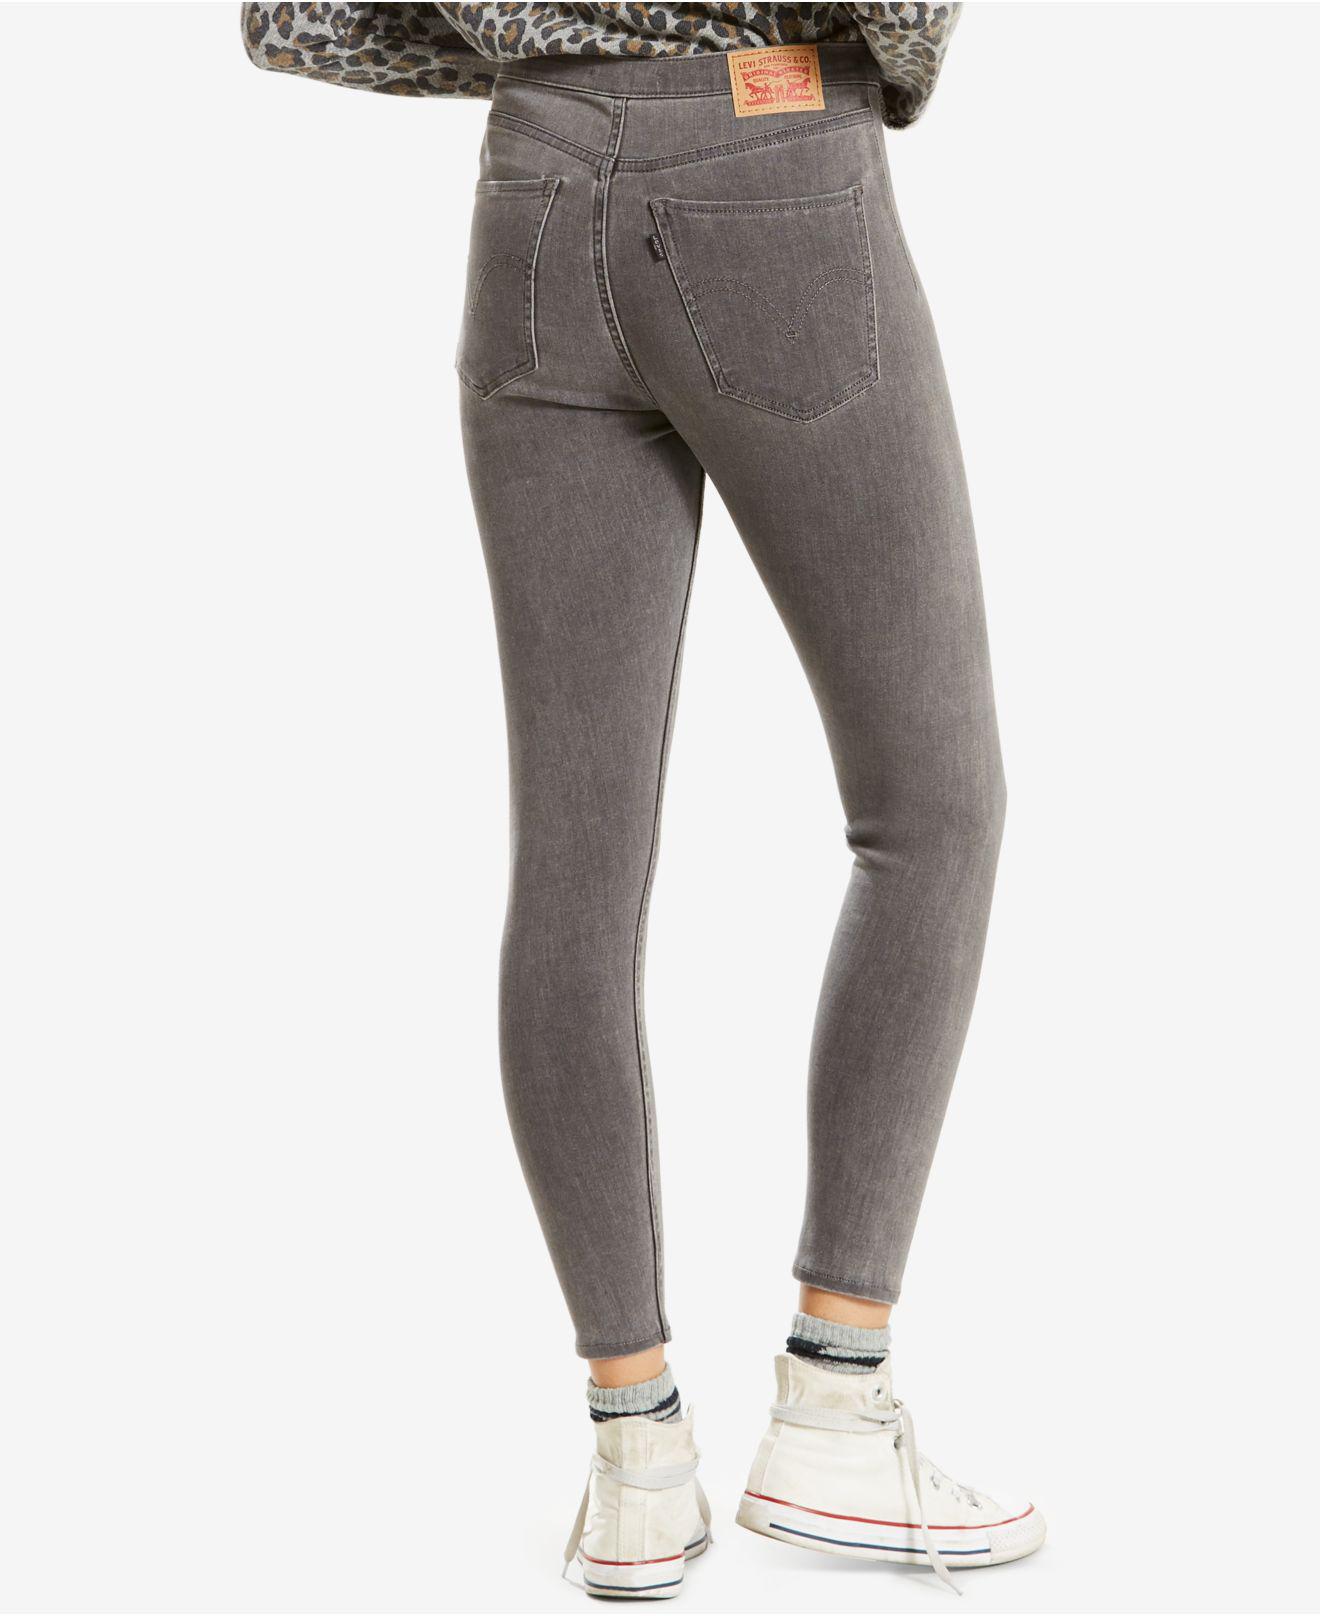 runaround super skinny jeans levis